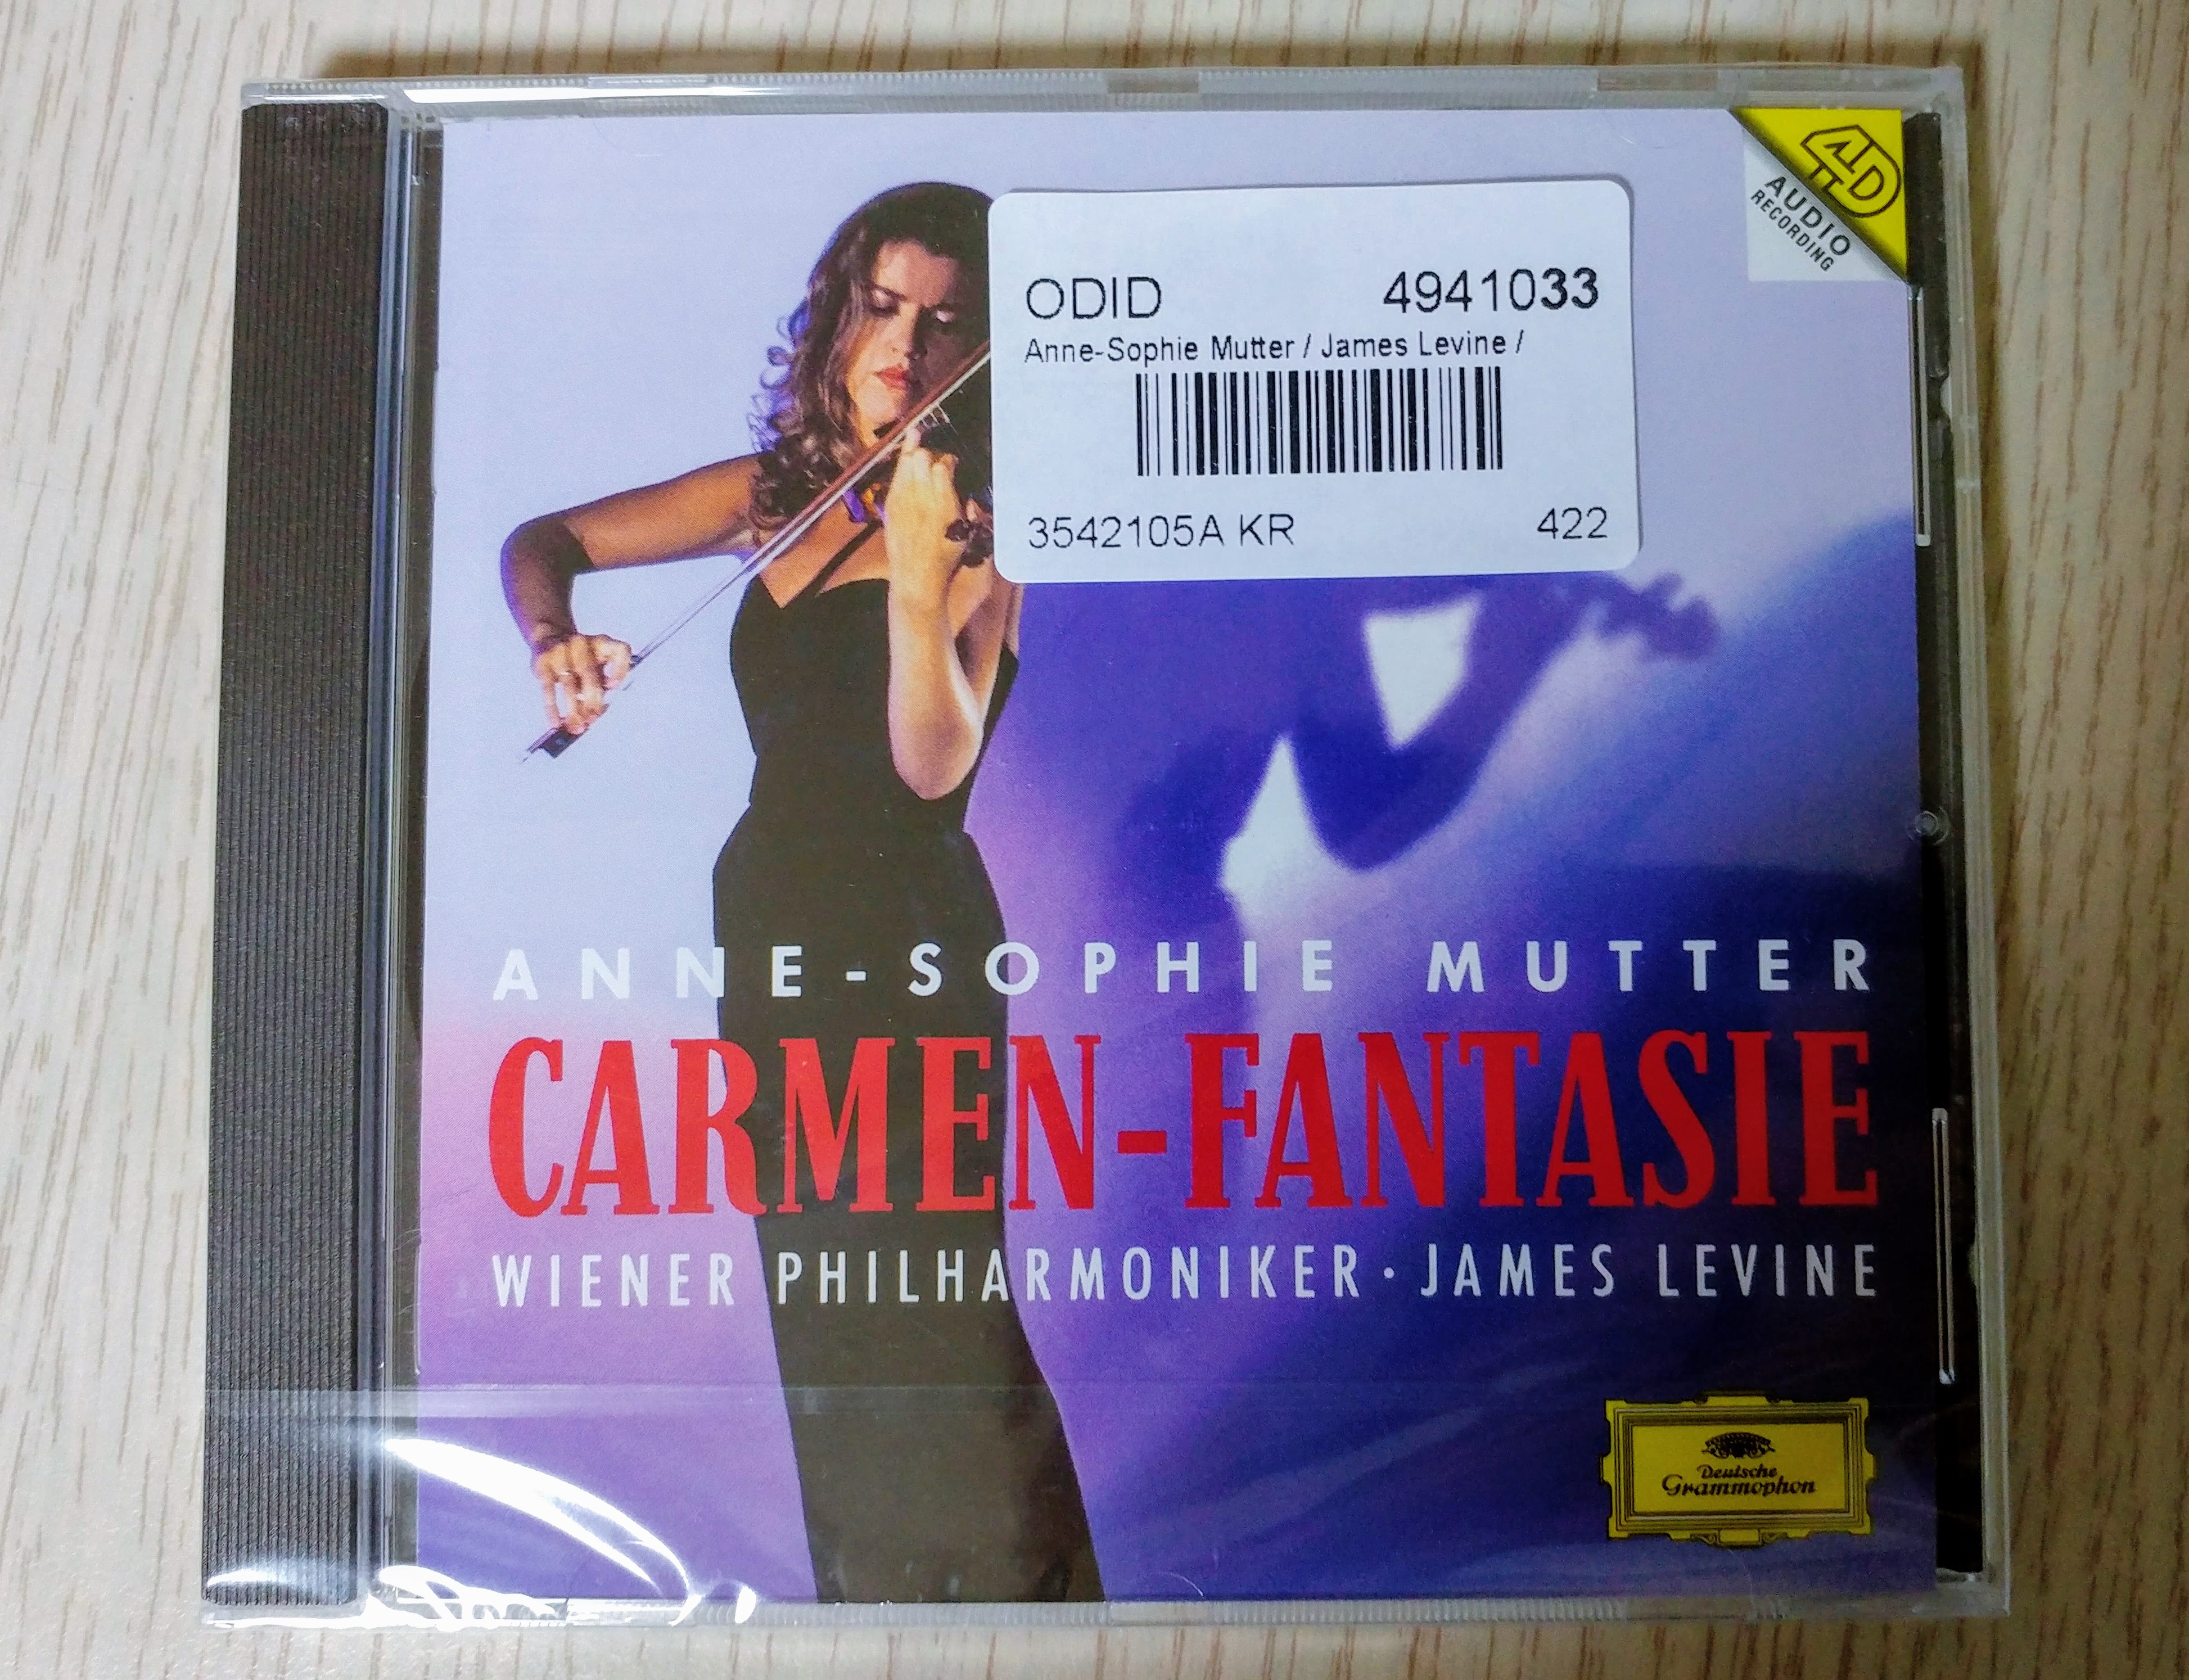 20180219_202441_HDR.jpg 고음질 명반: Anne-Sophie Mutter의 Carmen-Fantasie (Deutsche Grammophon 1993)